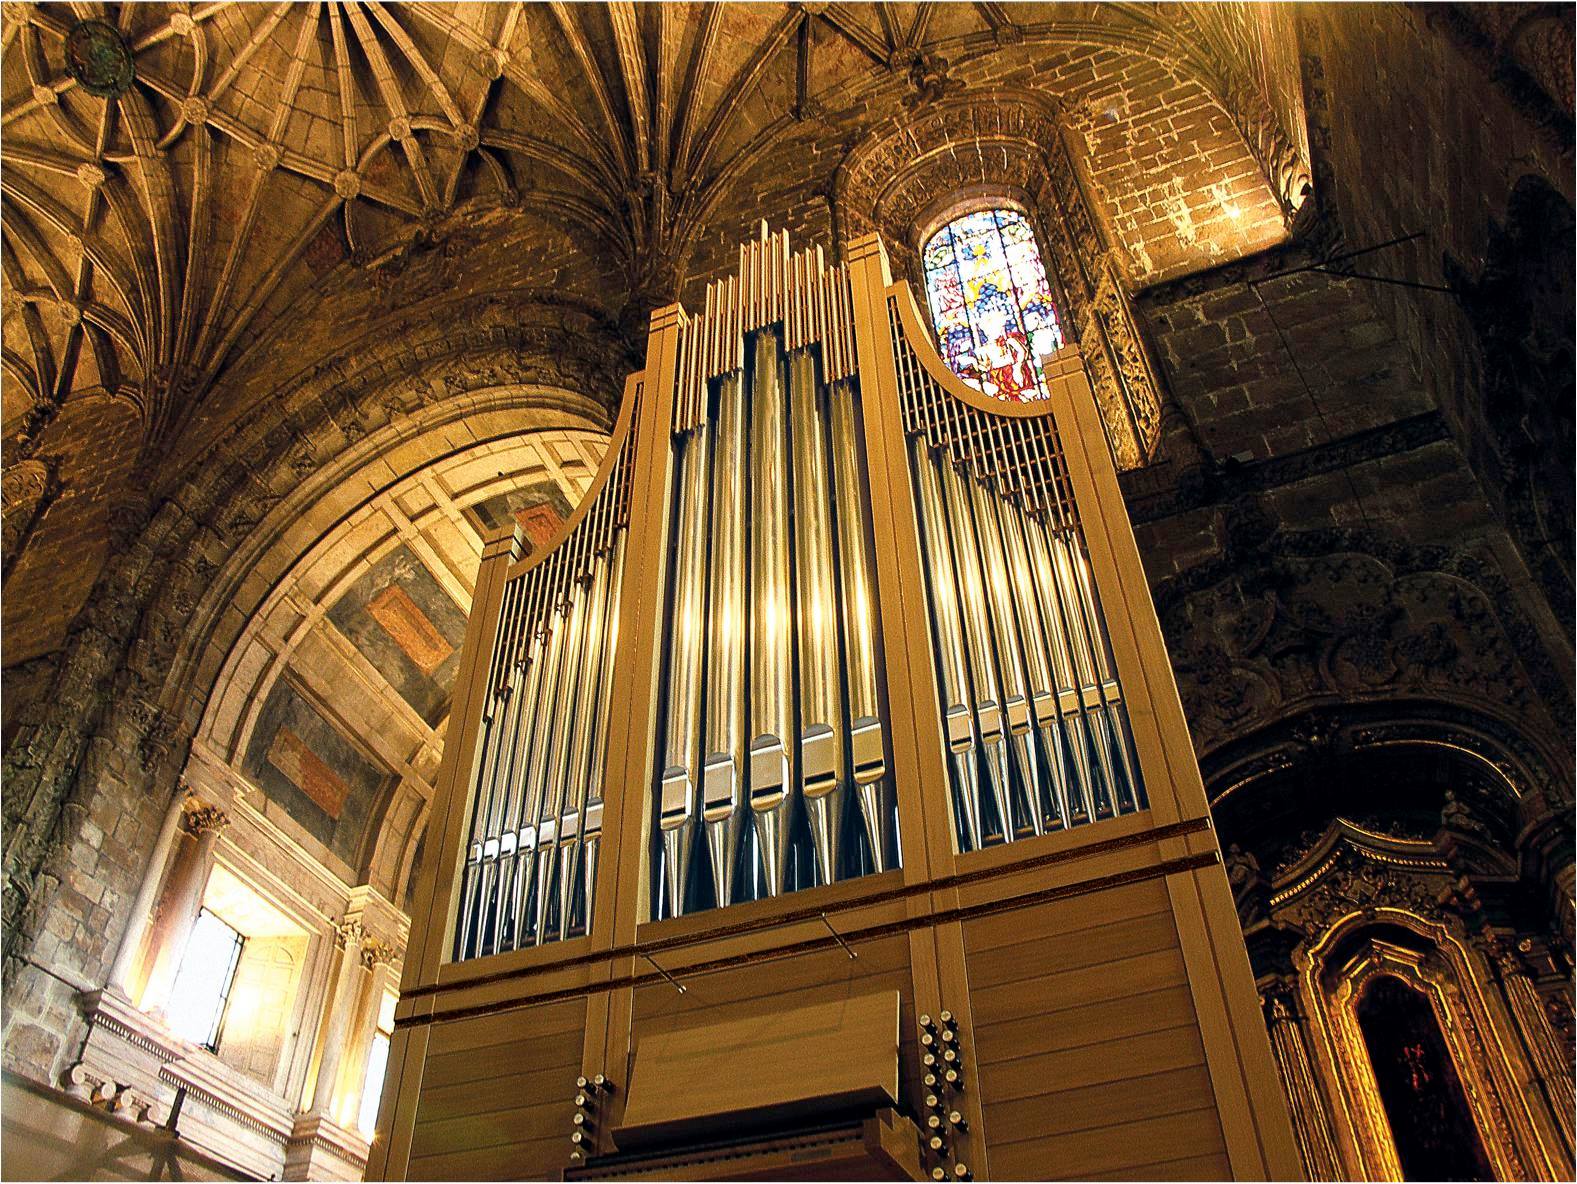 Concerto de Órgão - Mosteiro dos Jerónimos